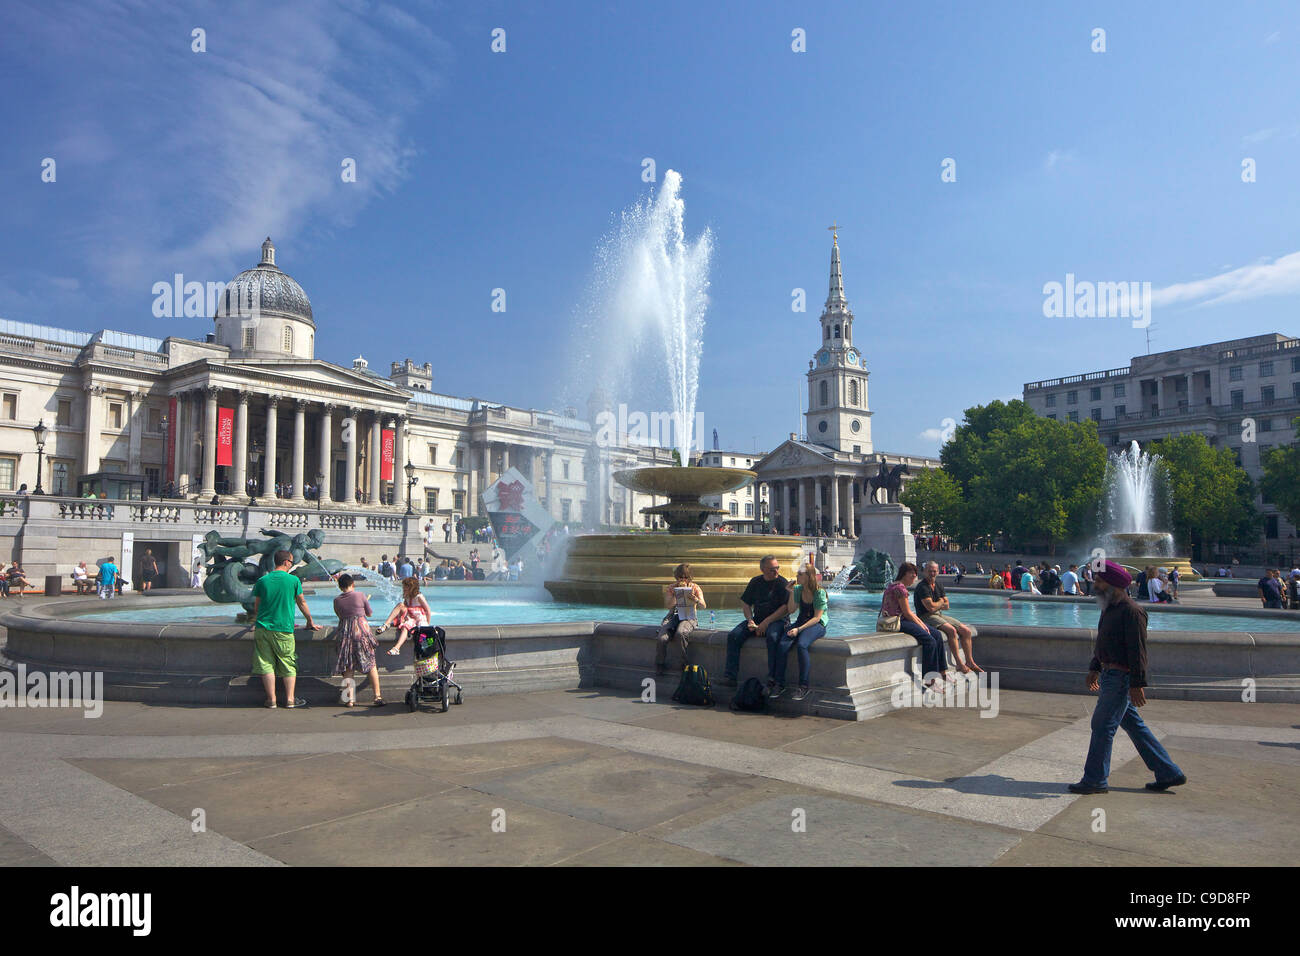 Fontaines, National Gallery et St Martins-dans-le-champs d'église à Trafalgar Square, le soleil d'été, Londres, Angleterre, RU, Unité Banque D'Images